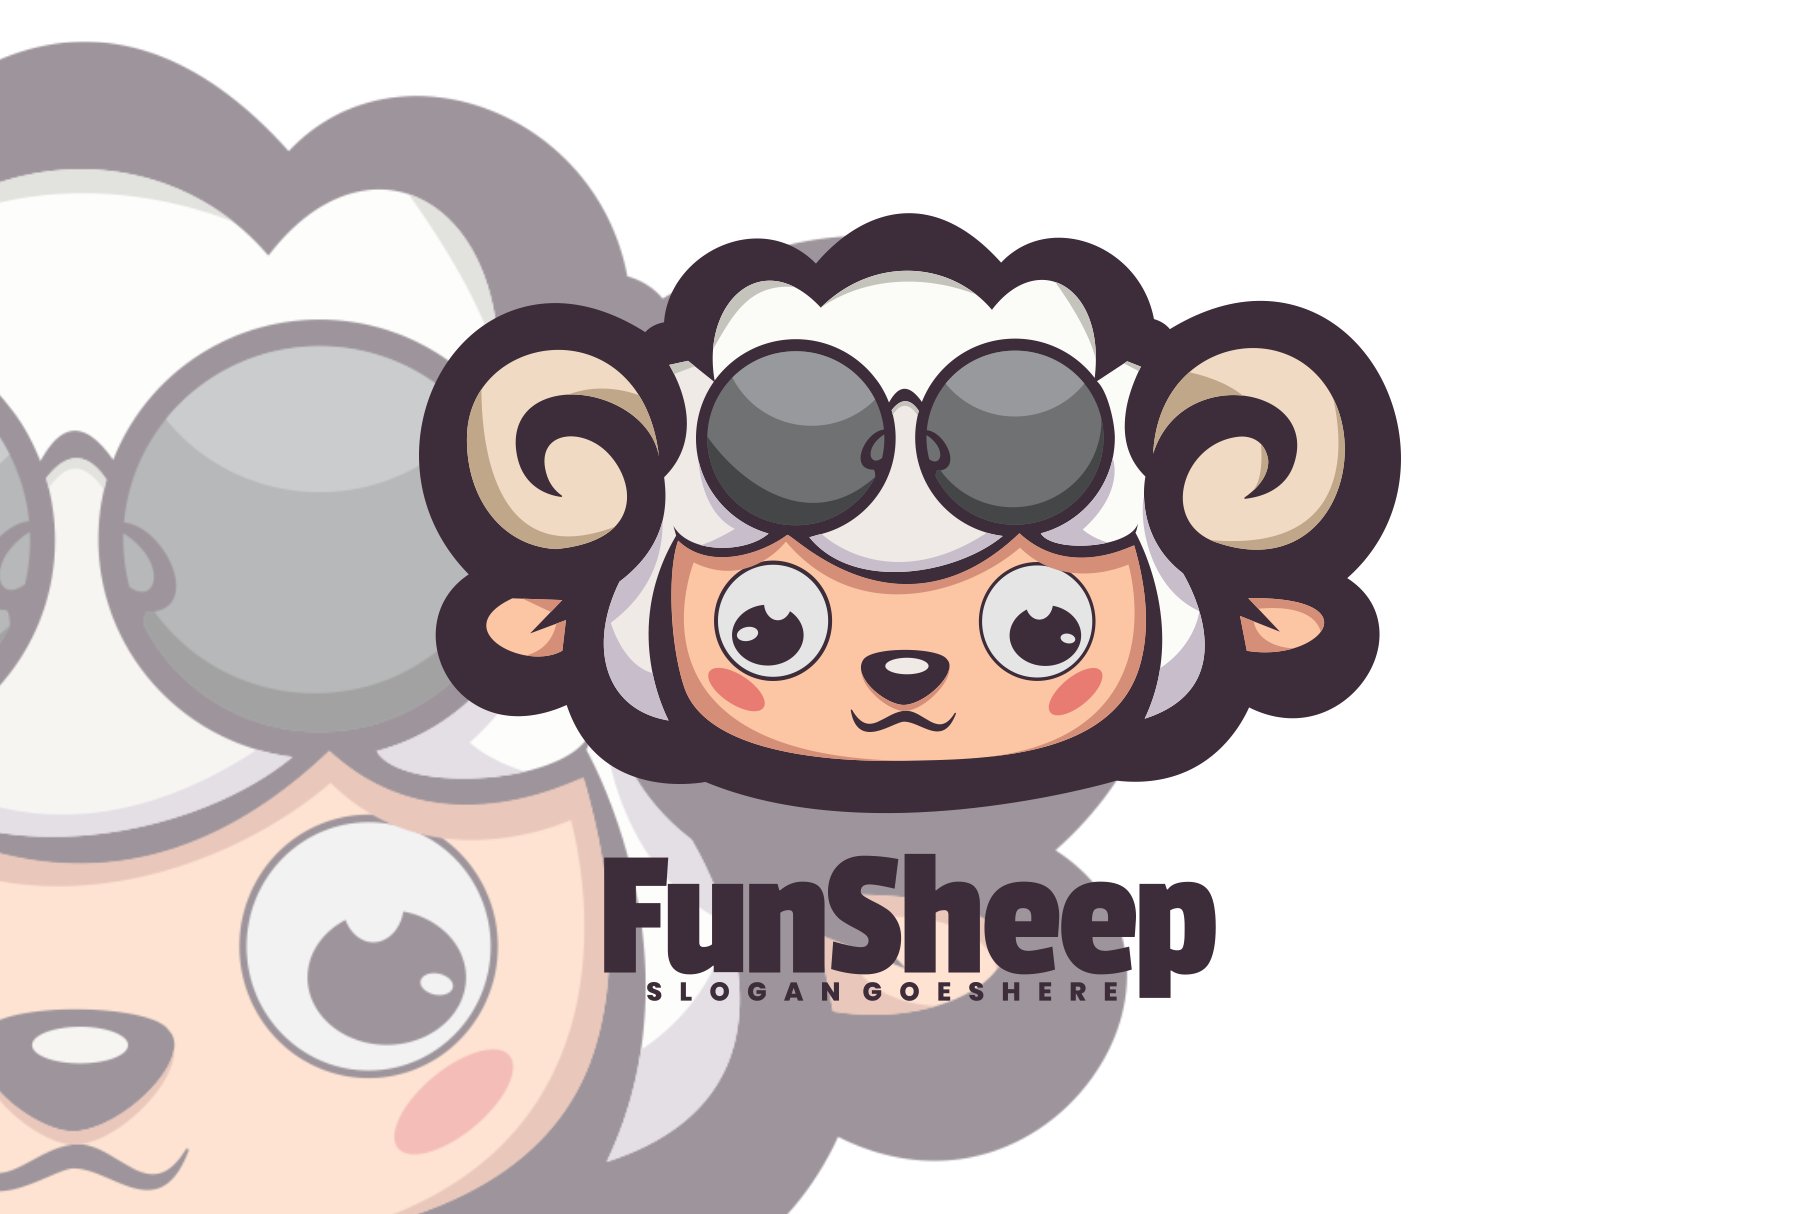 Fun Sheep Logo Vector cover image.